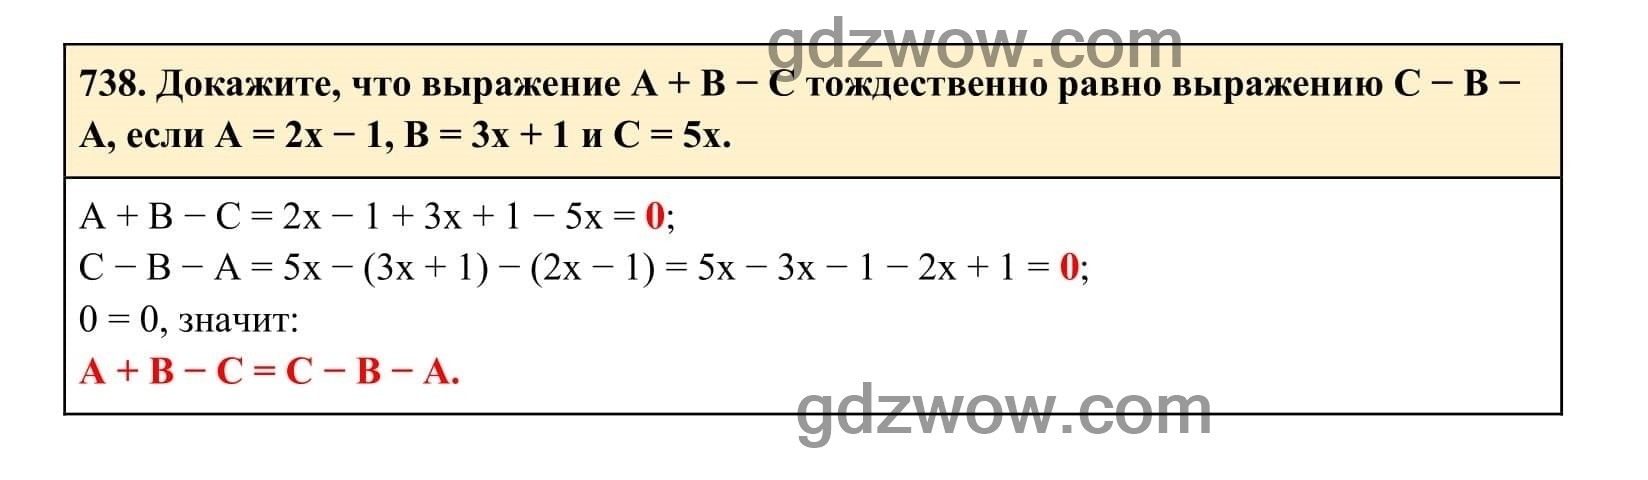 Упражнение 738 - ГДЗ по Алгебре 7 класс Учебник Макарычев (решебник) - GDZwow